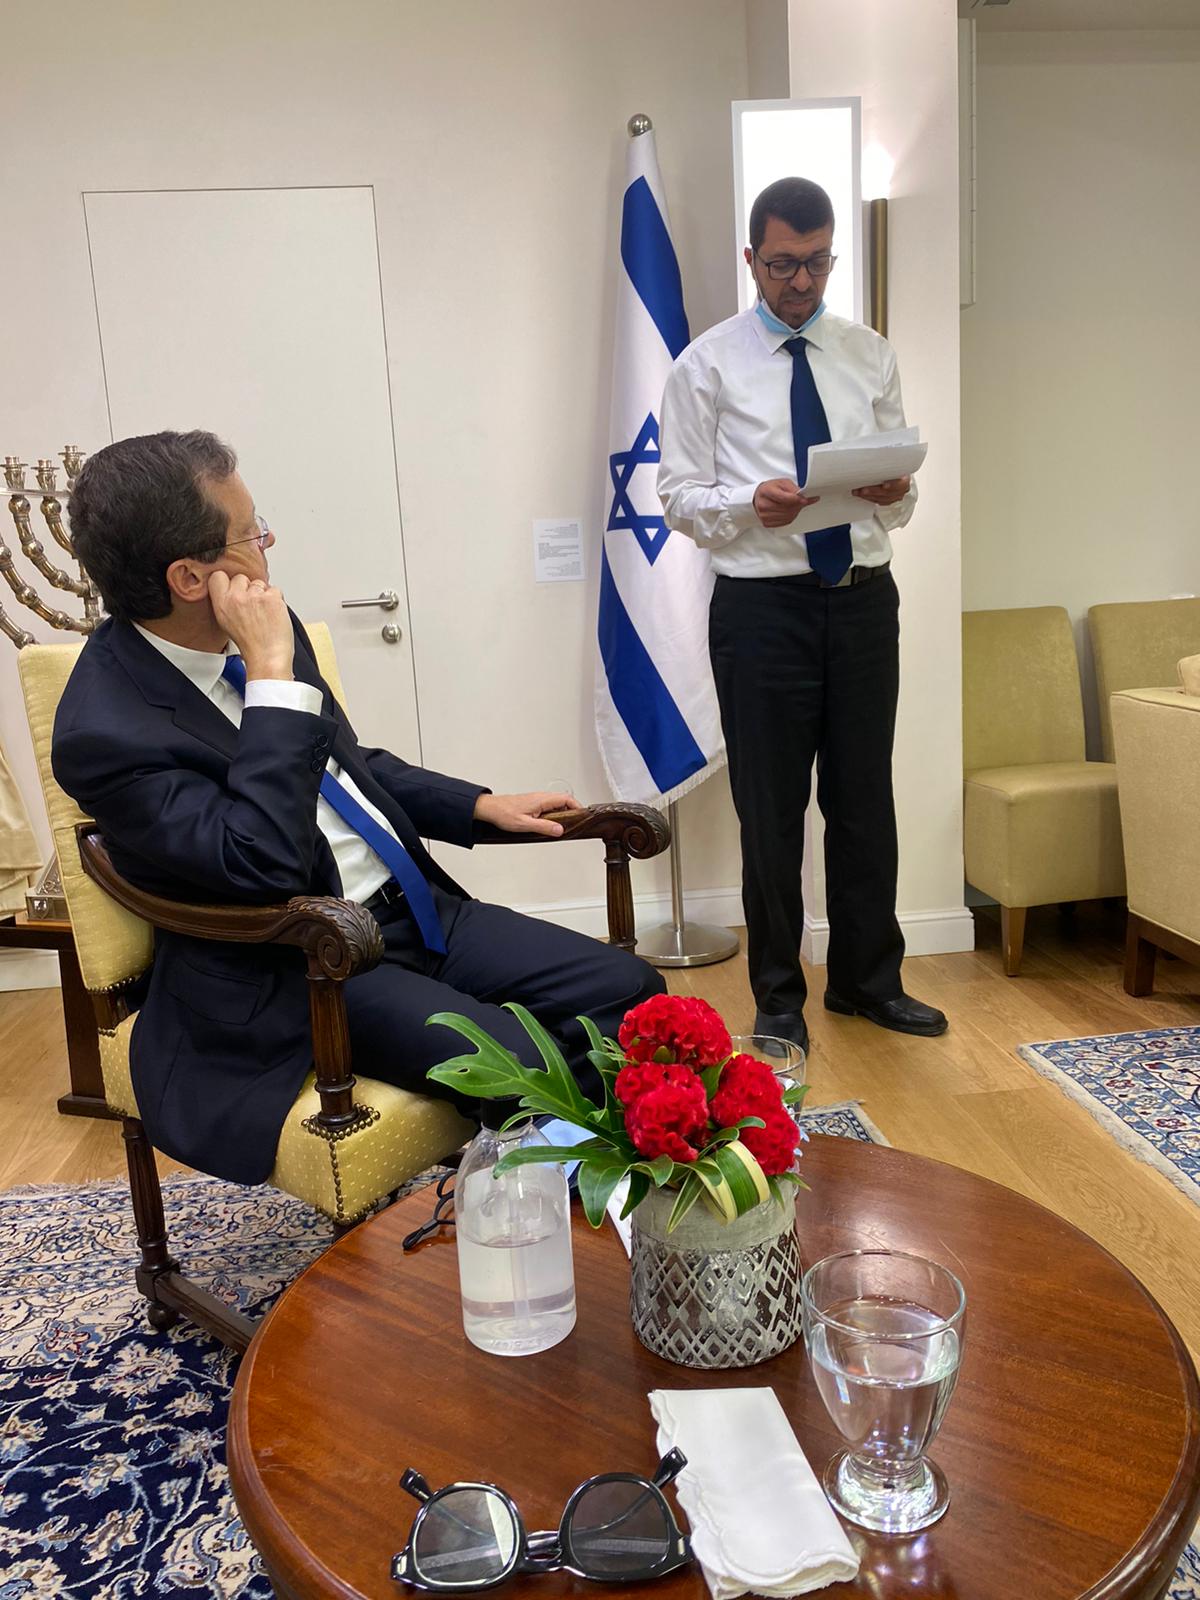  وفد ممثل عن عرب اللد يلتقي رئيس الدولة في القدس